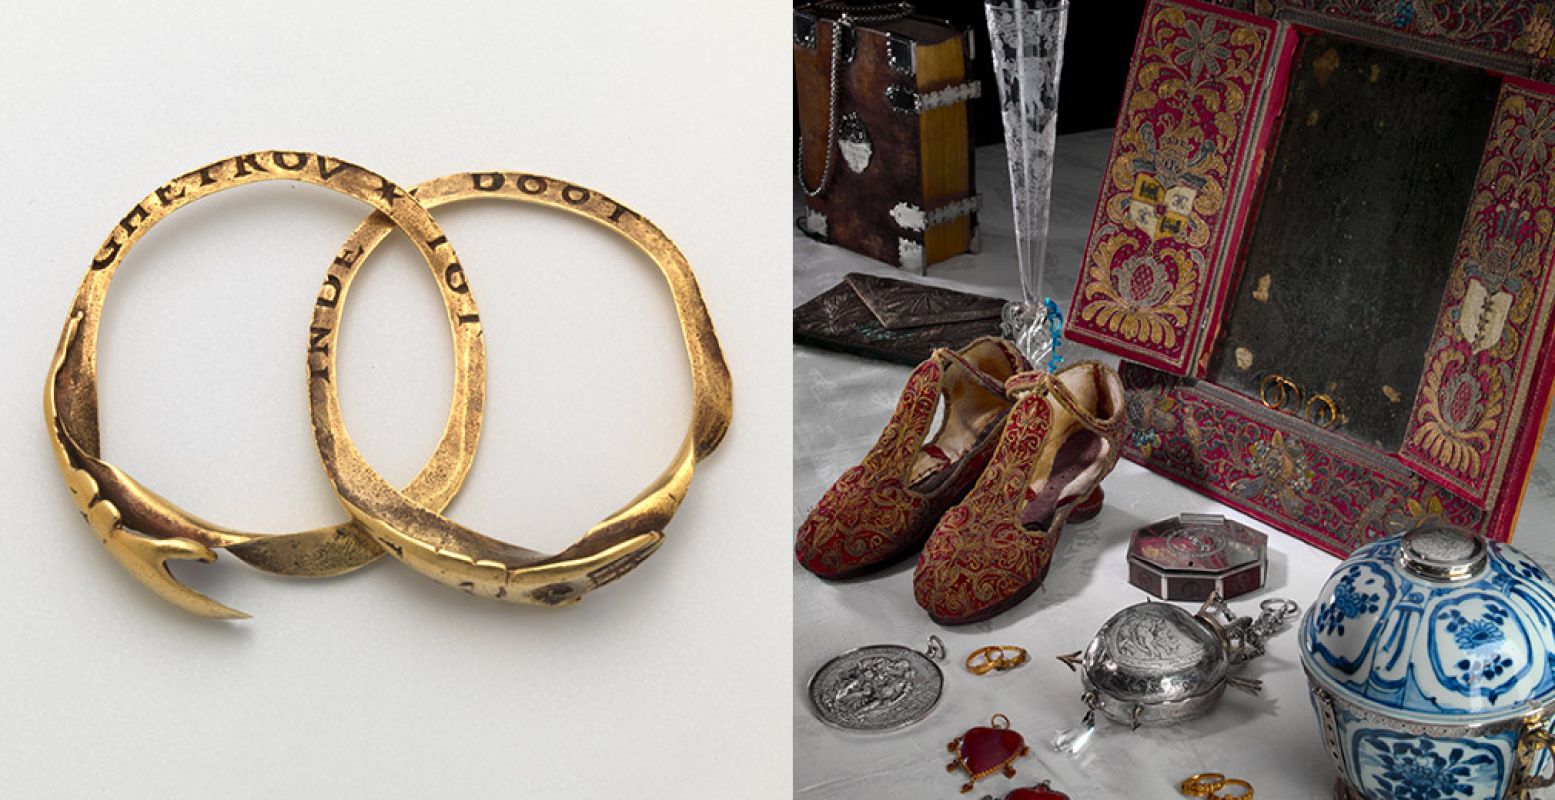 Links: Trouwring, 1580-1700, goud, email. Rechts: Zeventiende-eeuwse huwelijksgeschenken uit de collectie van het Fries Museum, Leeuwarden. Foto: Fries Museum.